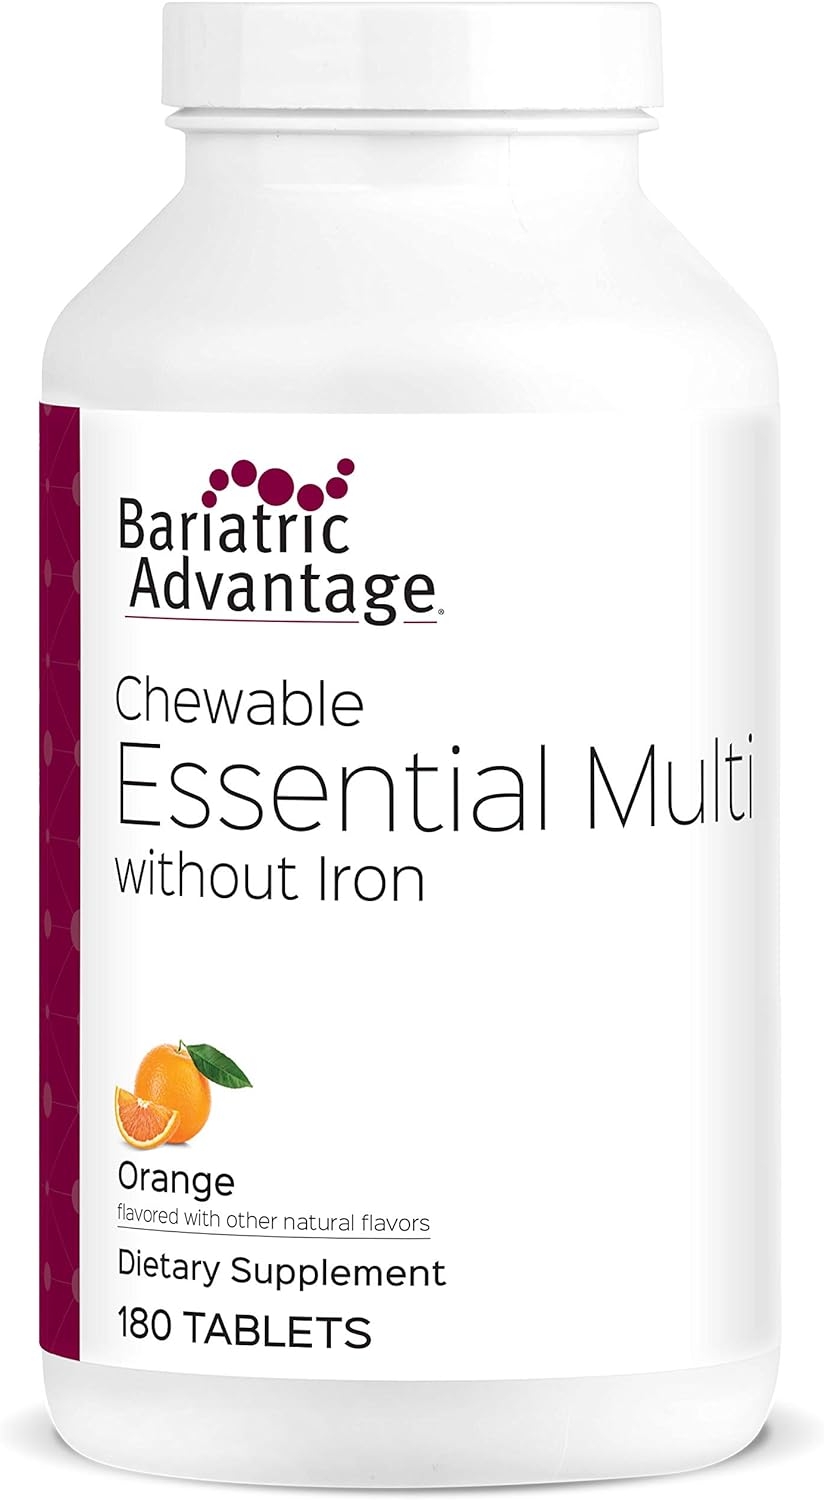 Bariatric Advantage Complete Chewable Multivitamin - 180 Count, Orange